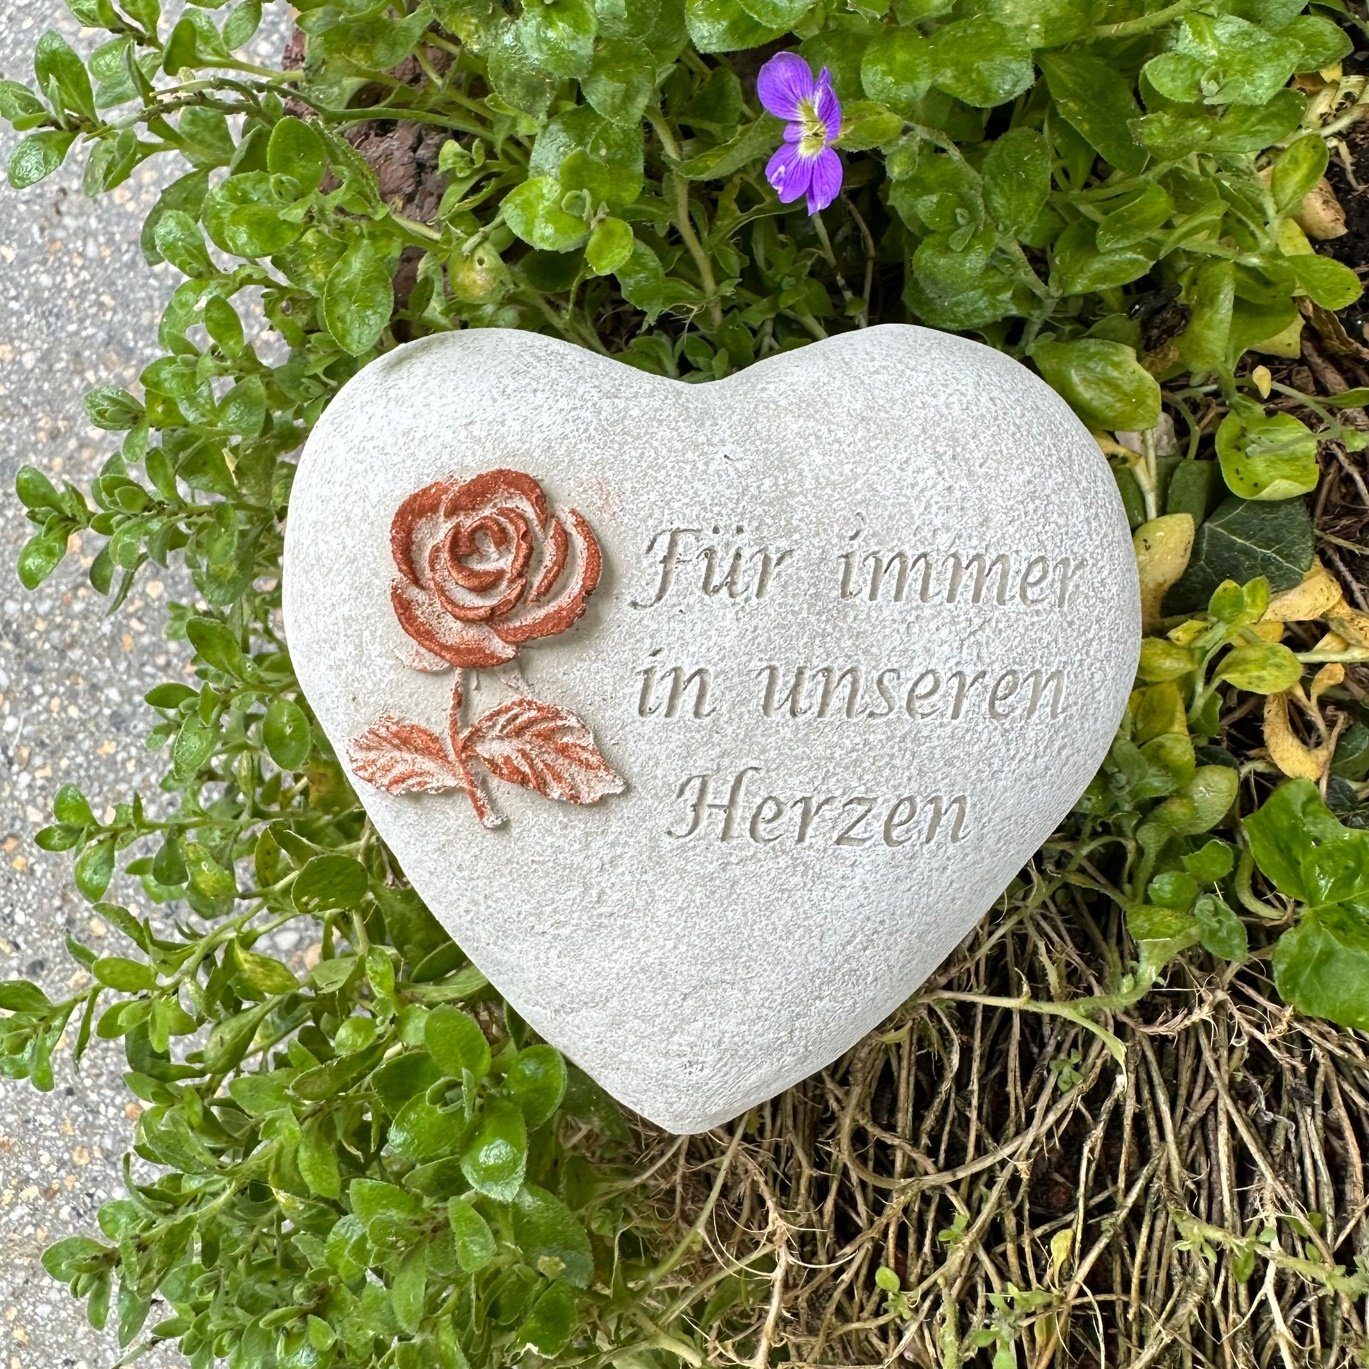 Radami Gartenfigur Grabherz Grabschmuck Grab Herz Spruch - Für immer in unseren Herzen -